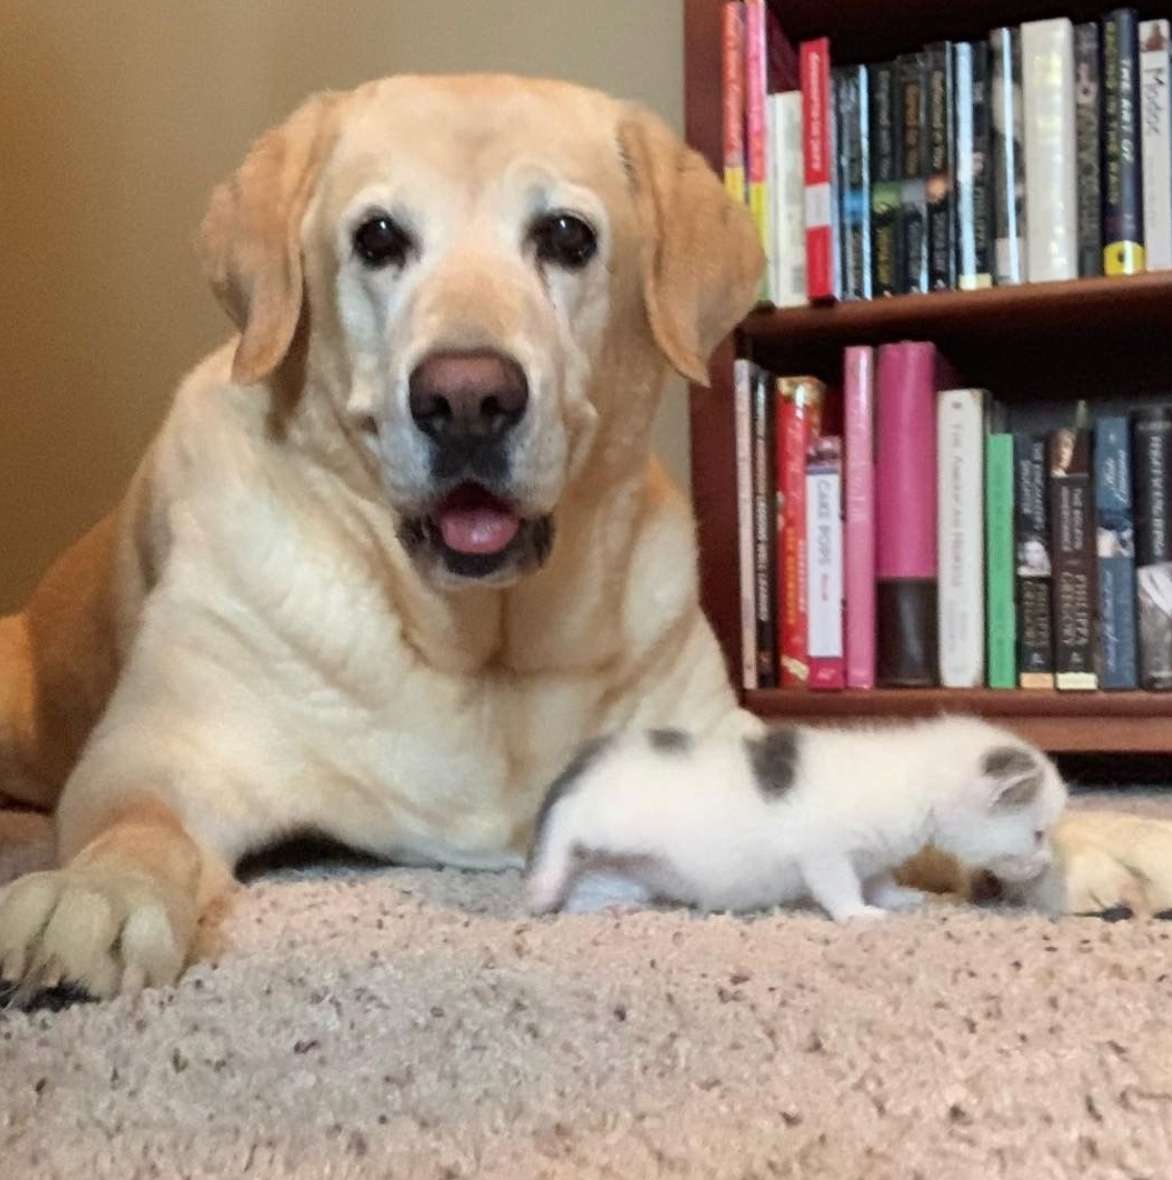 Dog raises kitten